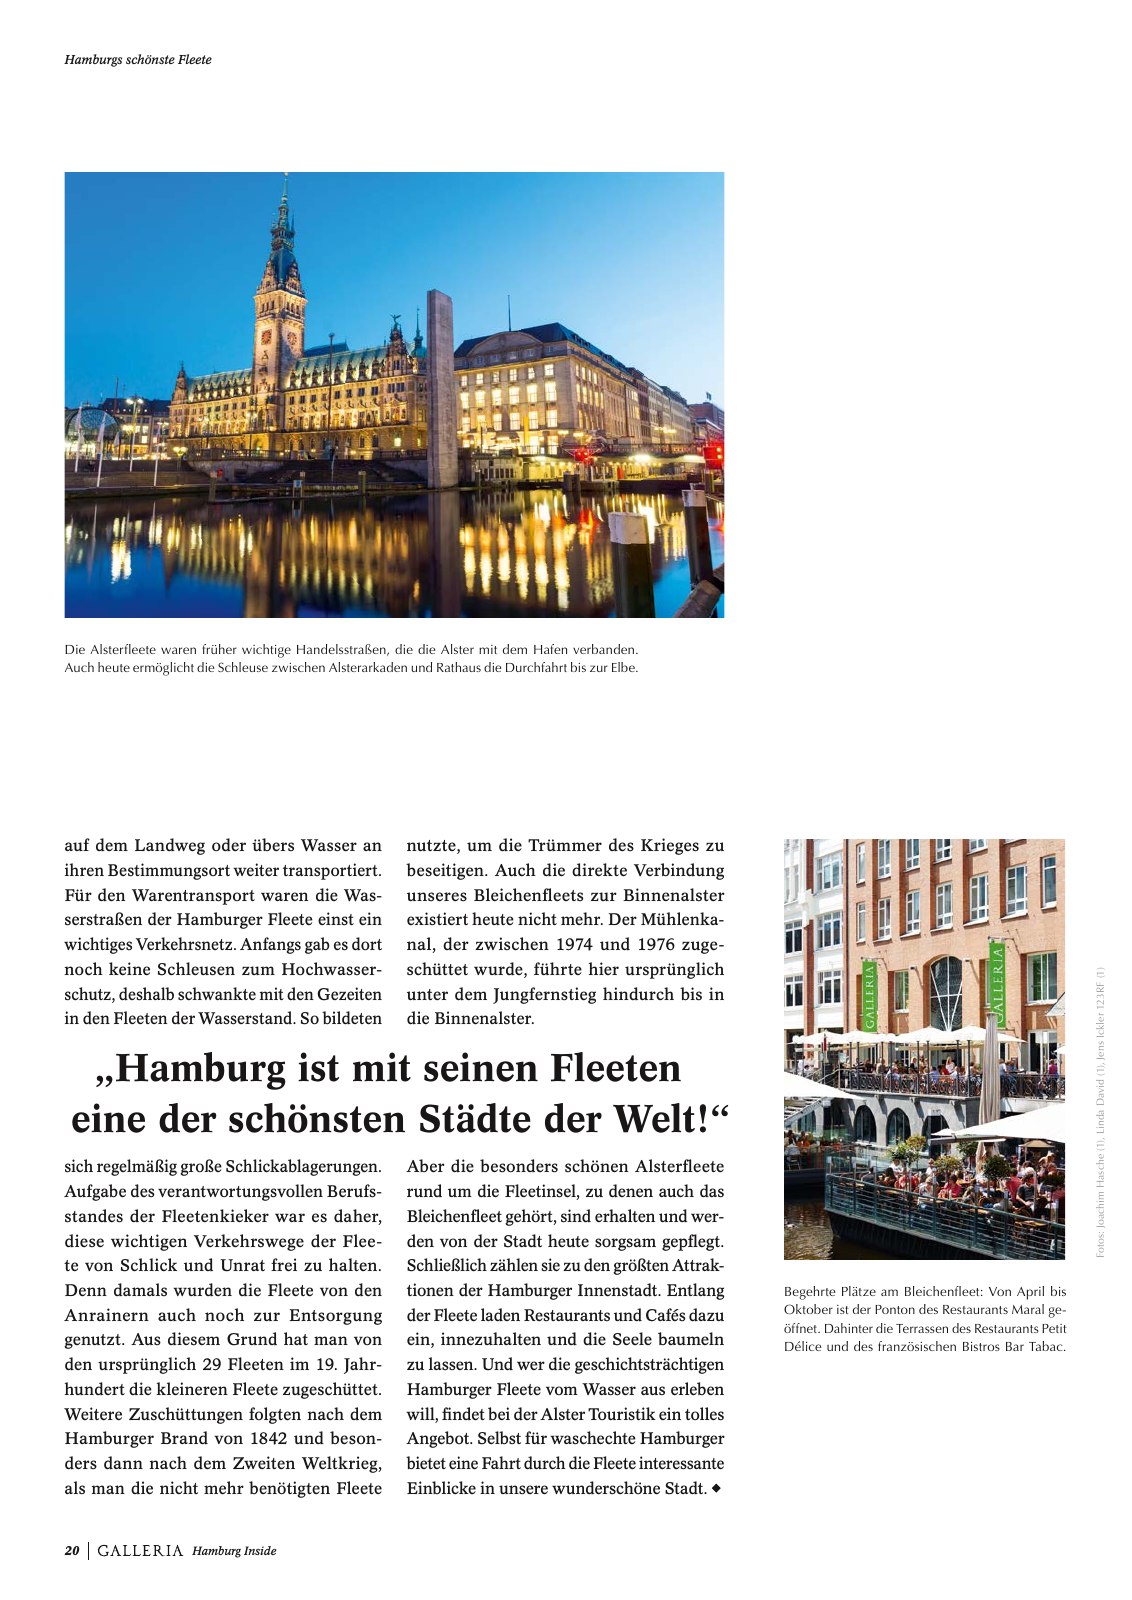 Vorschau GALLERIA Magazin Hamburg Inside 1 Seite 20